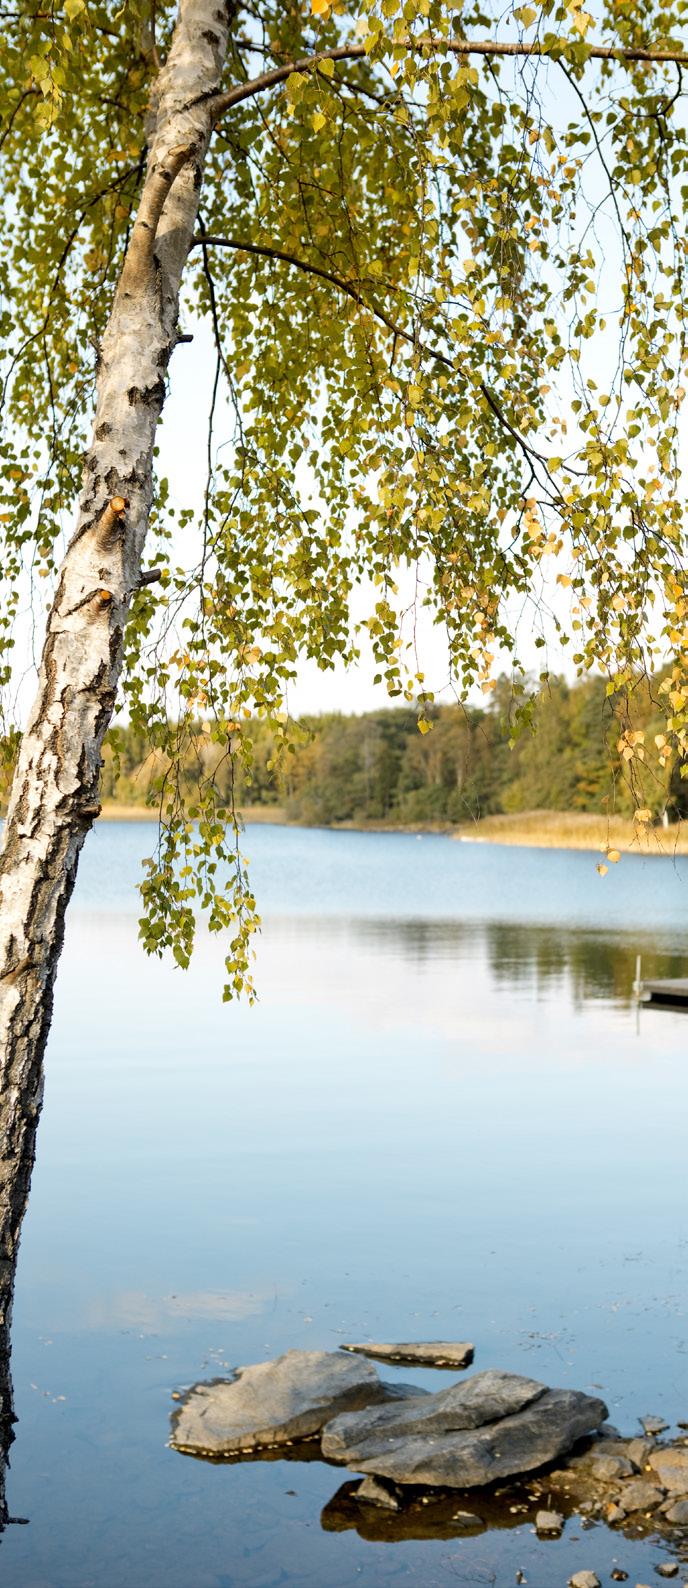 En vattendom avseende ansökan om tillstånd till utökat uttag och bortledning av ytvatten från Västra Nedsjön för vattenförsörjning i Härryda kommun meddelades av Mark- och miljödomstolen i januari